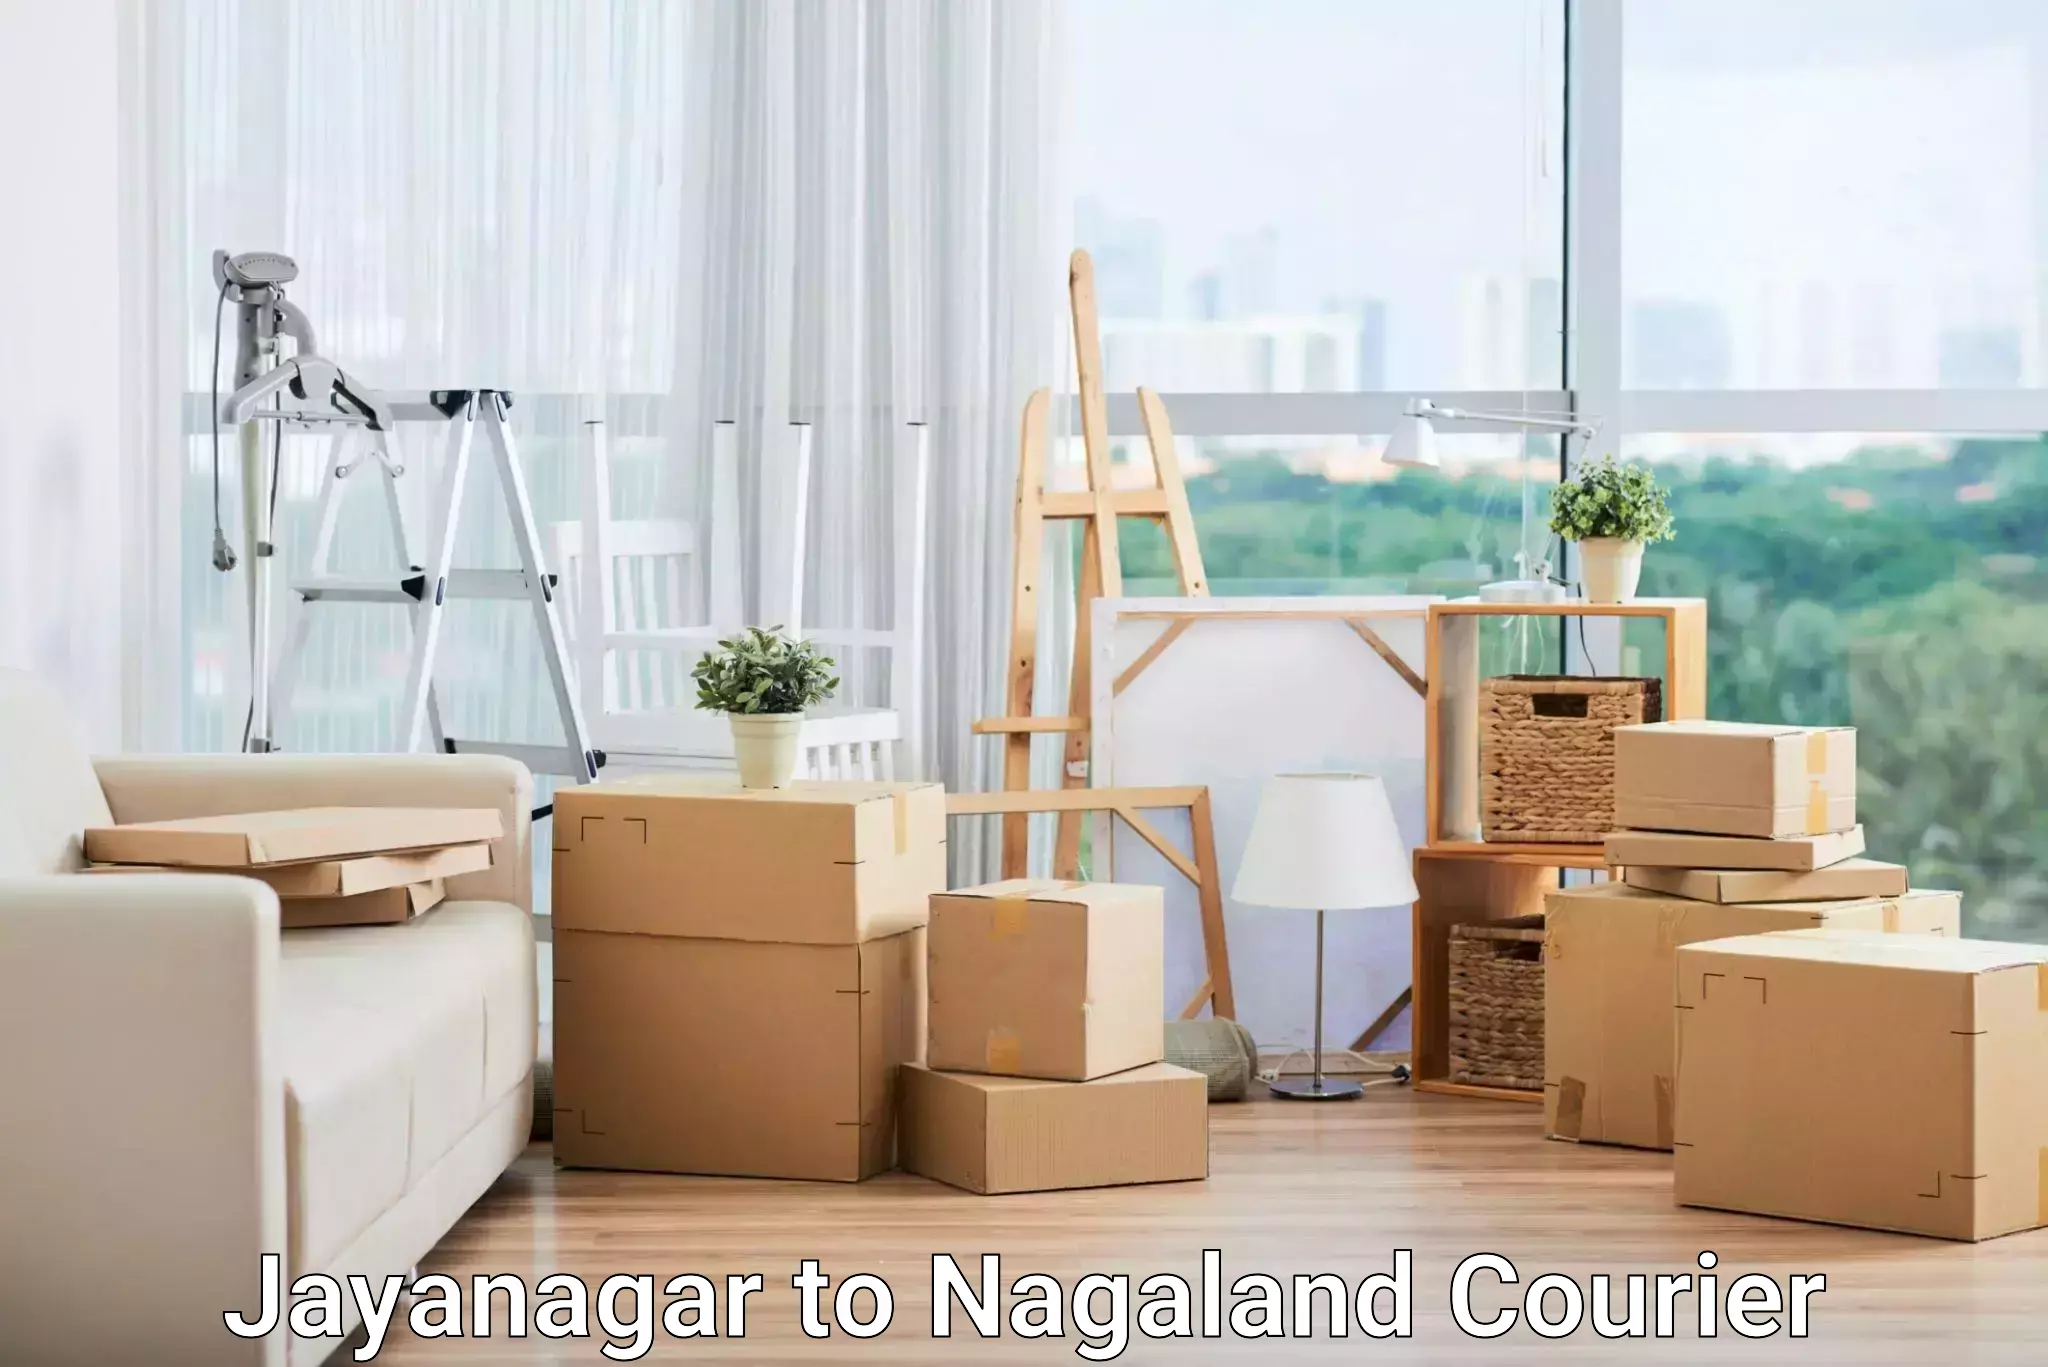 Customer-centric shipping Jayanagar to Nagaland